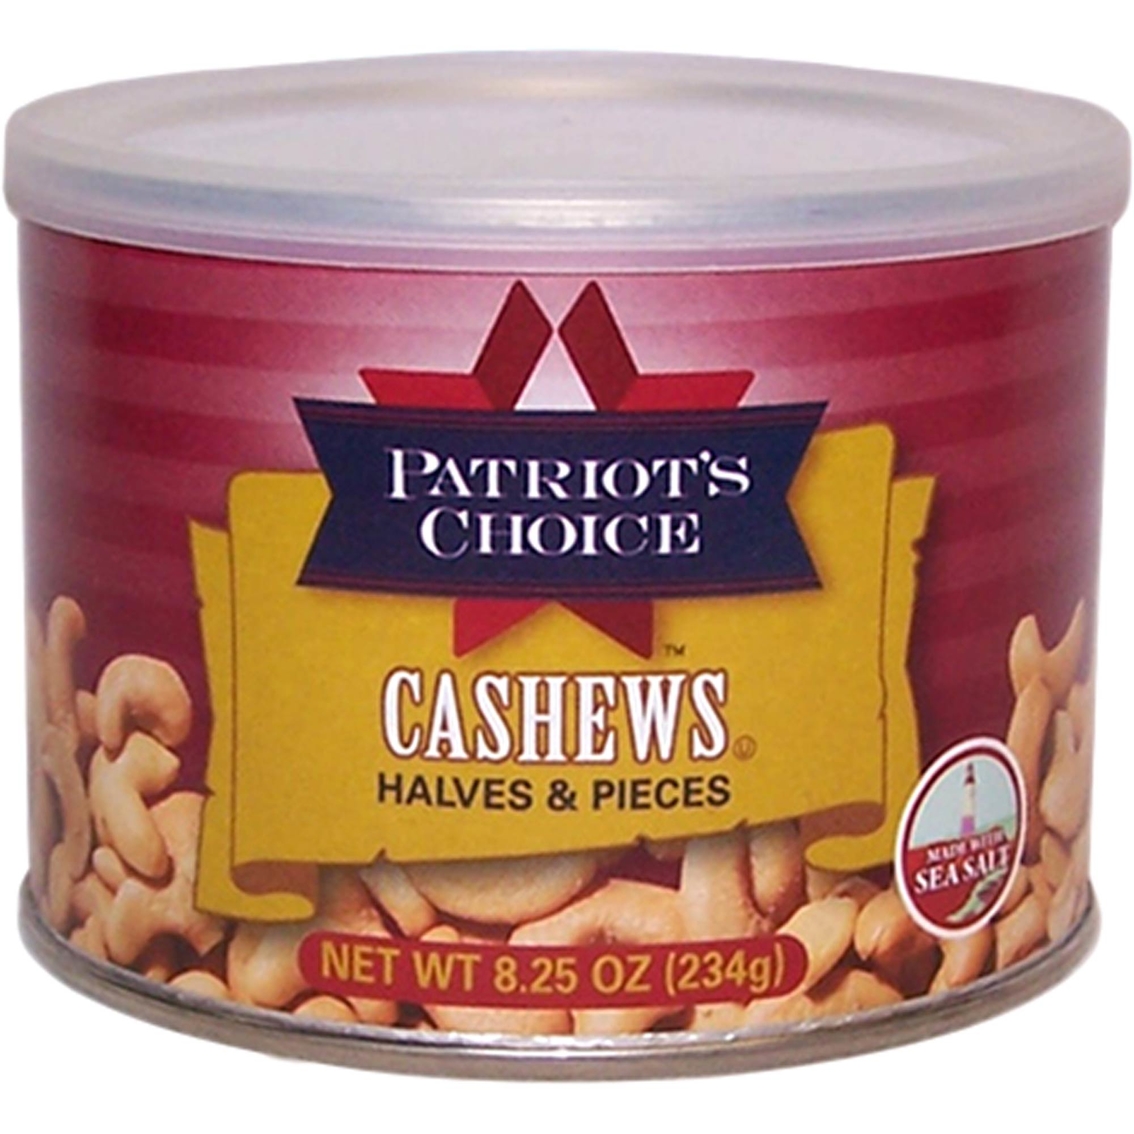 Patriot's Choice Cashew Halves & Pieces 8.25 oz.